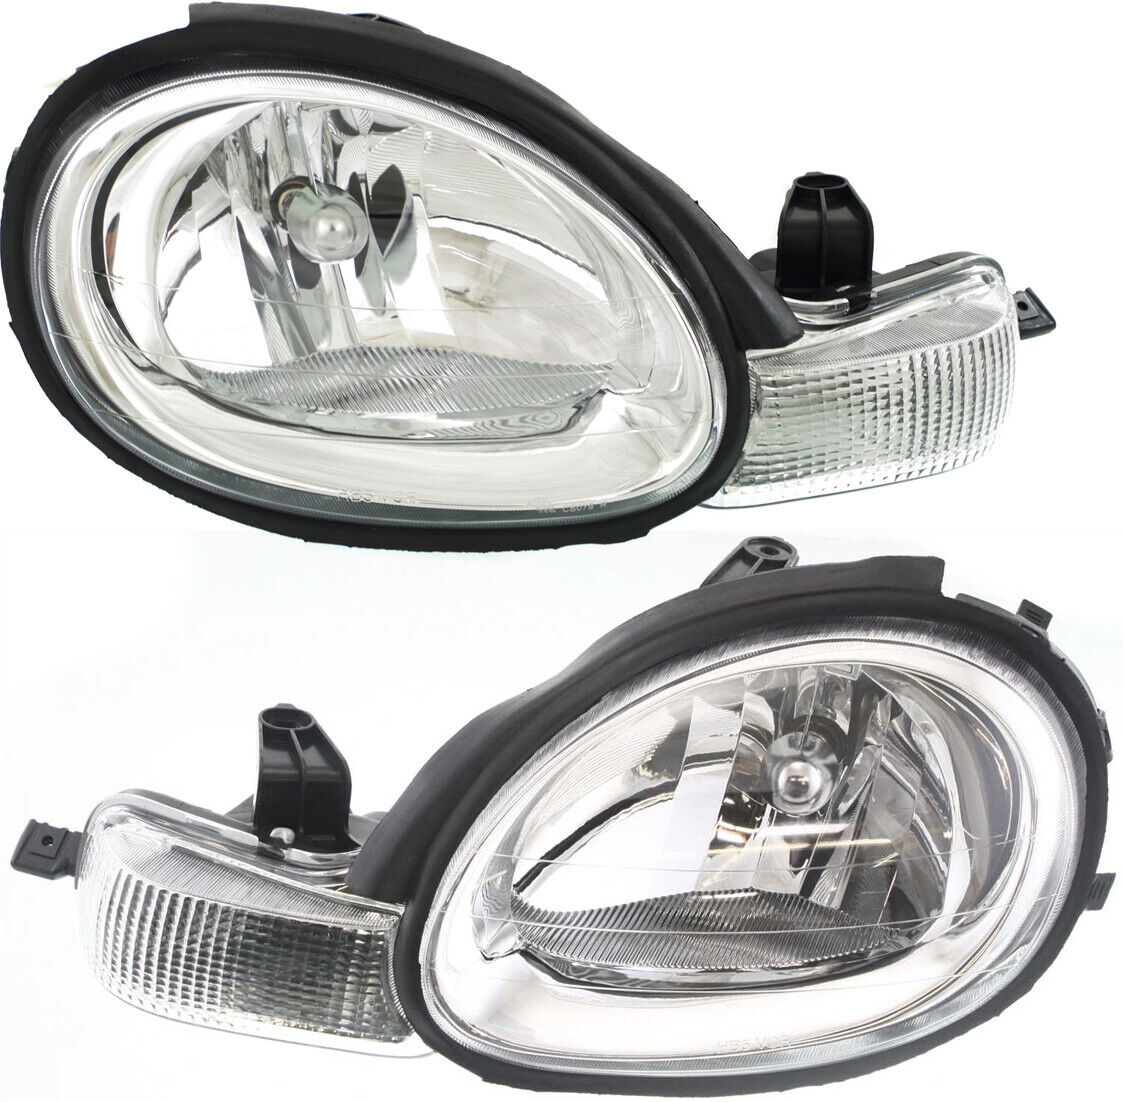 Headlight Set For 2000-02 Dodge Chrysler Neon Left and Right Chrome Interior 2Pc